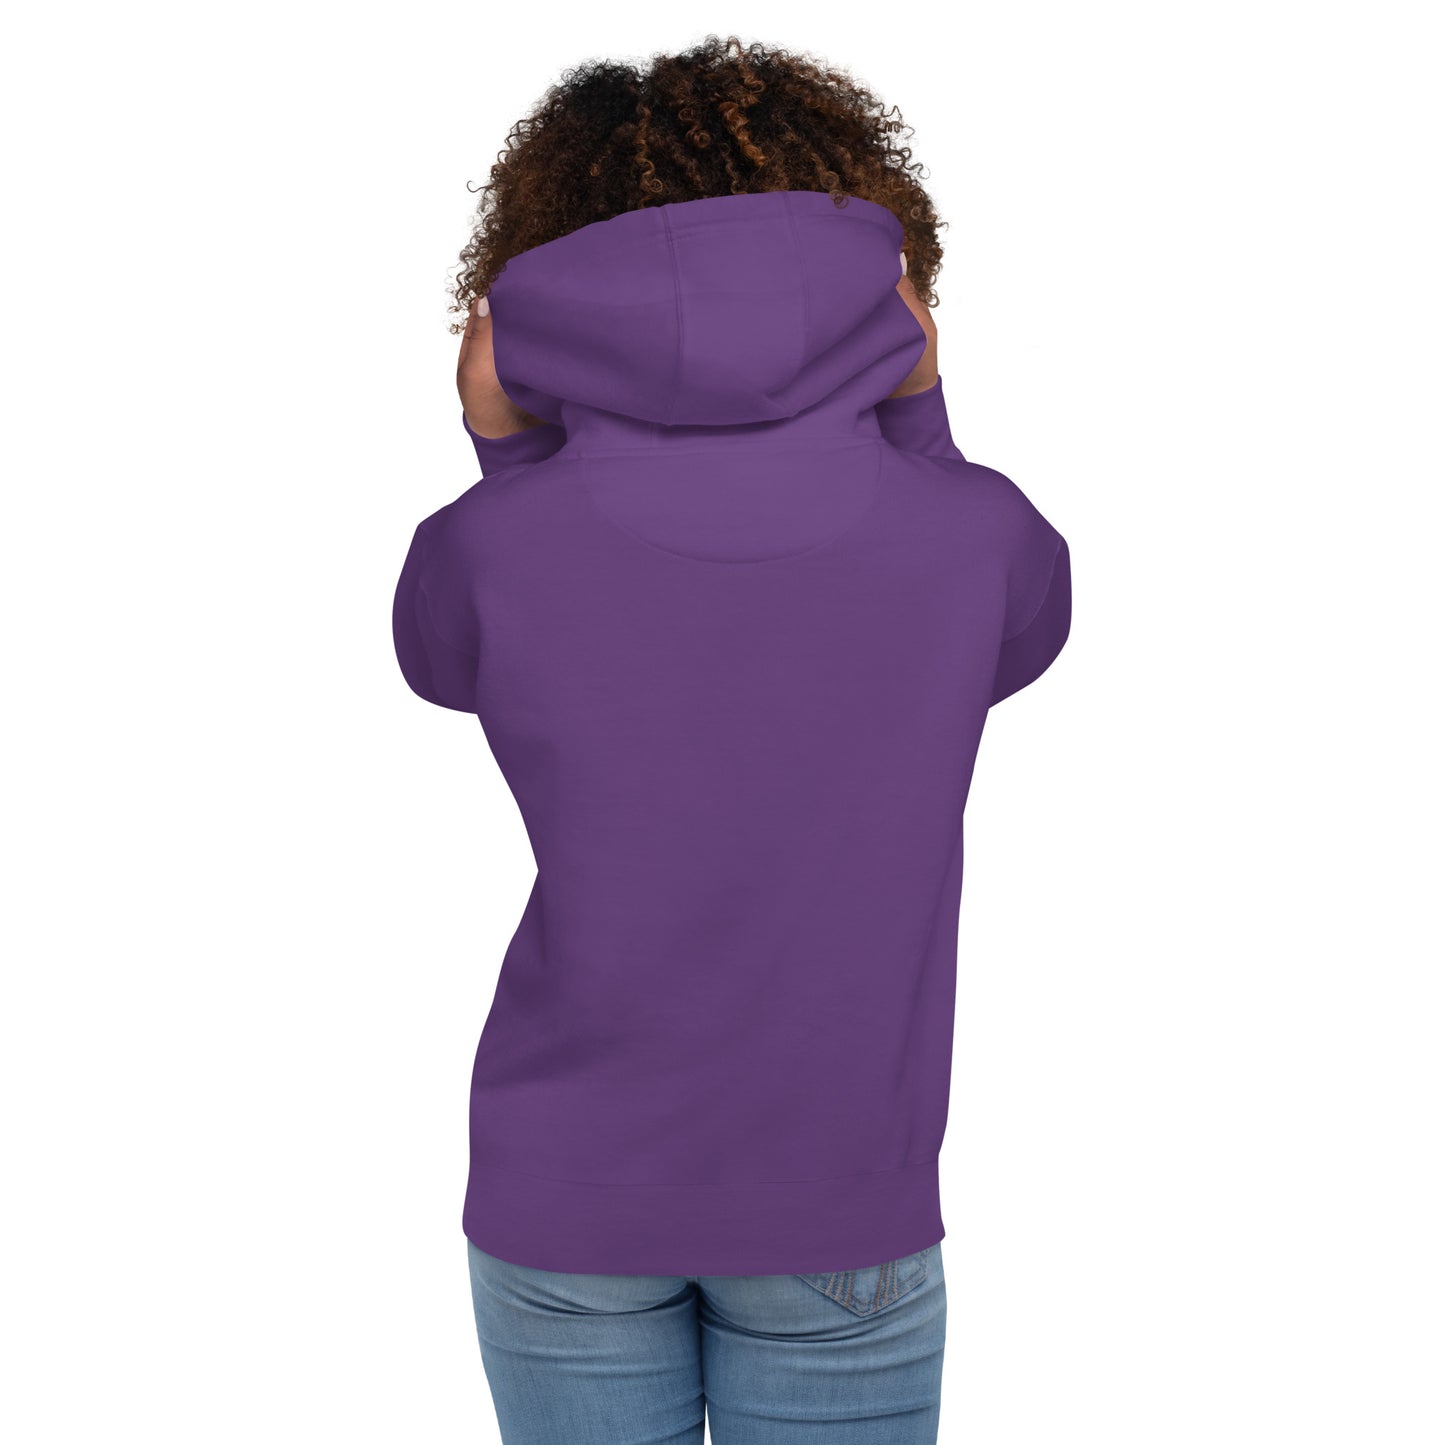 Boxed Smile Fleece in Purple - Hoodie